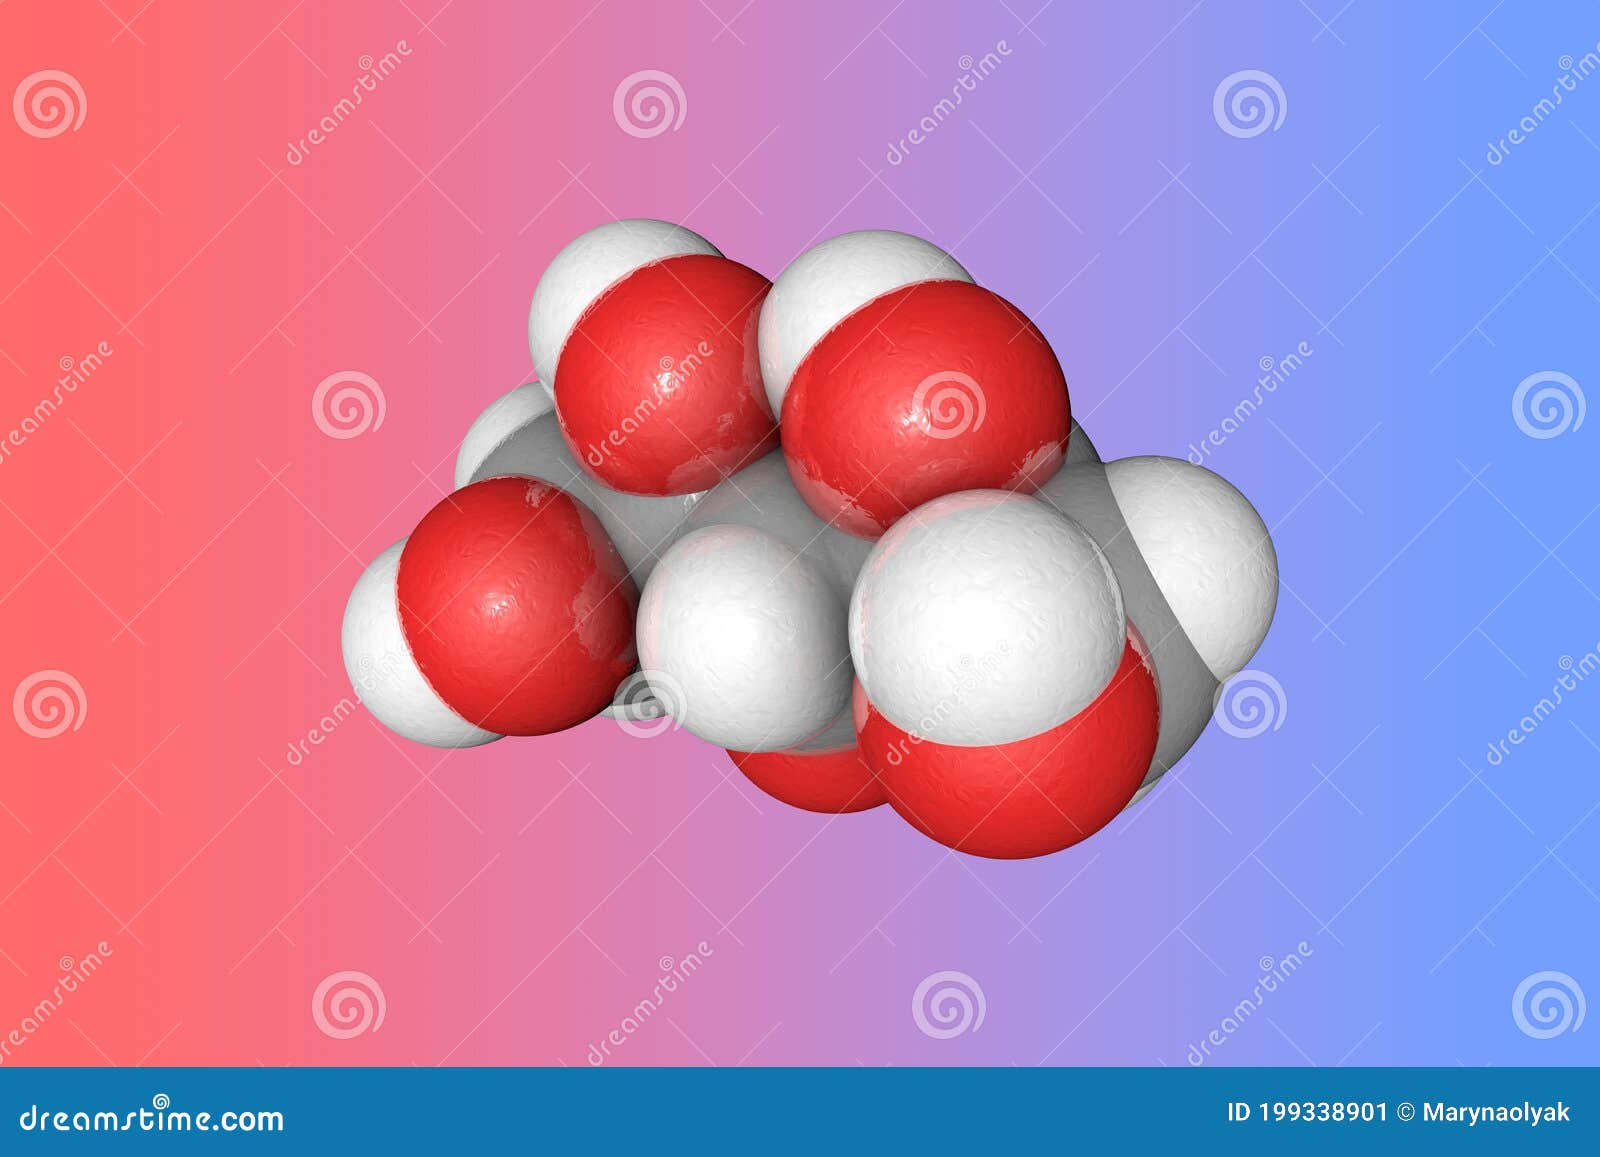 Modelo Molecular De Xilitol Los átomos Se Representan Como Esferas Con  Codificación De Color: Gris De Carbono, Rojo De Oxígeno, H Stock de  ilustración - Ilustración de colorido, cuidado: 199338901